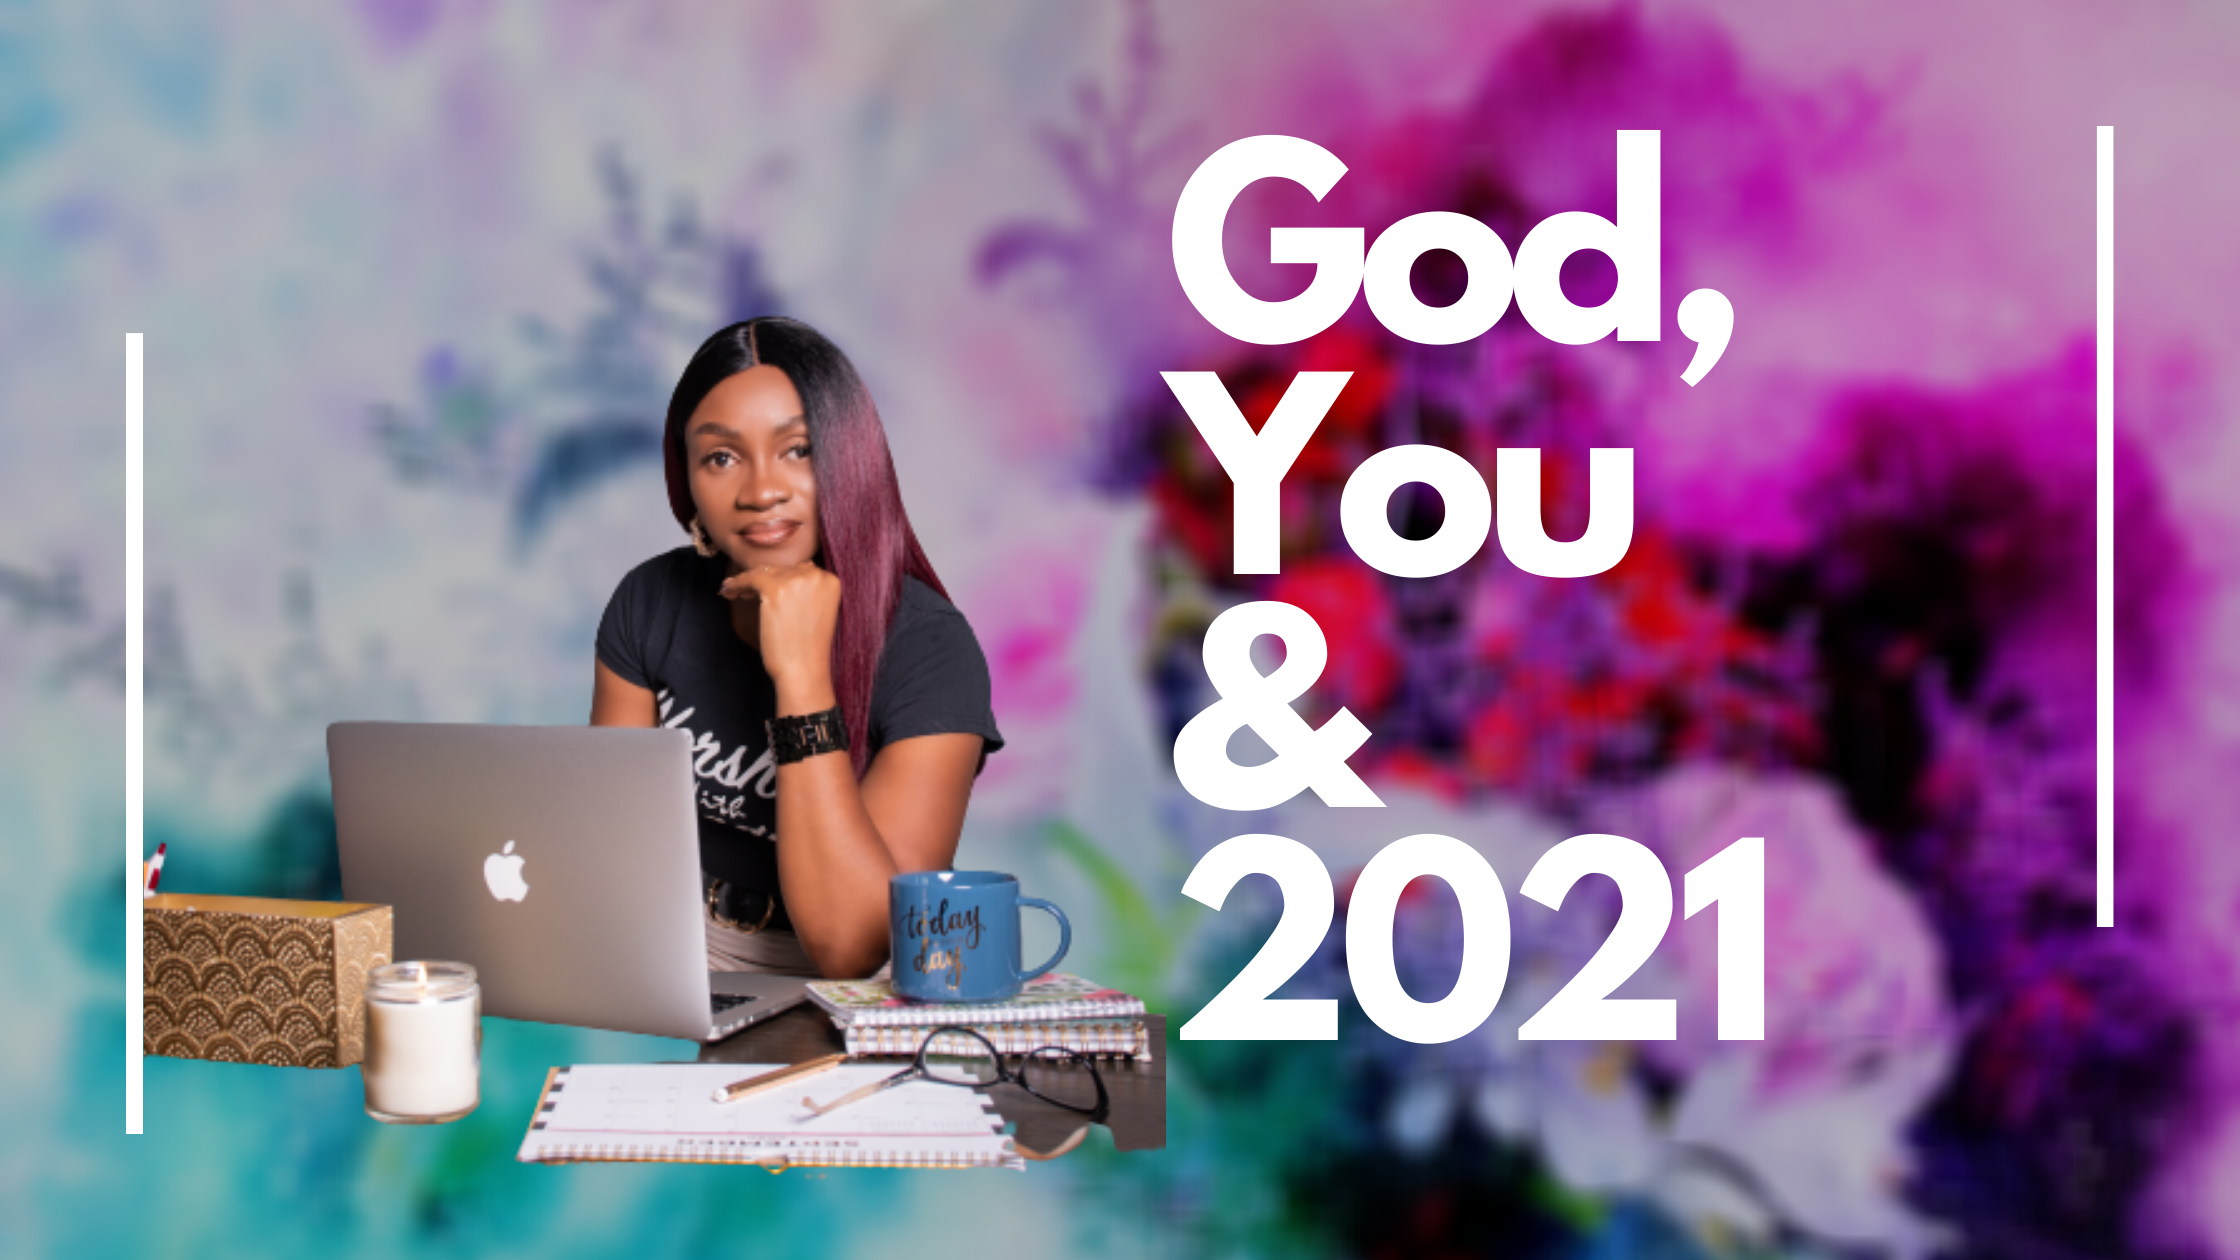 God, You & 2021